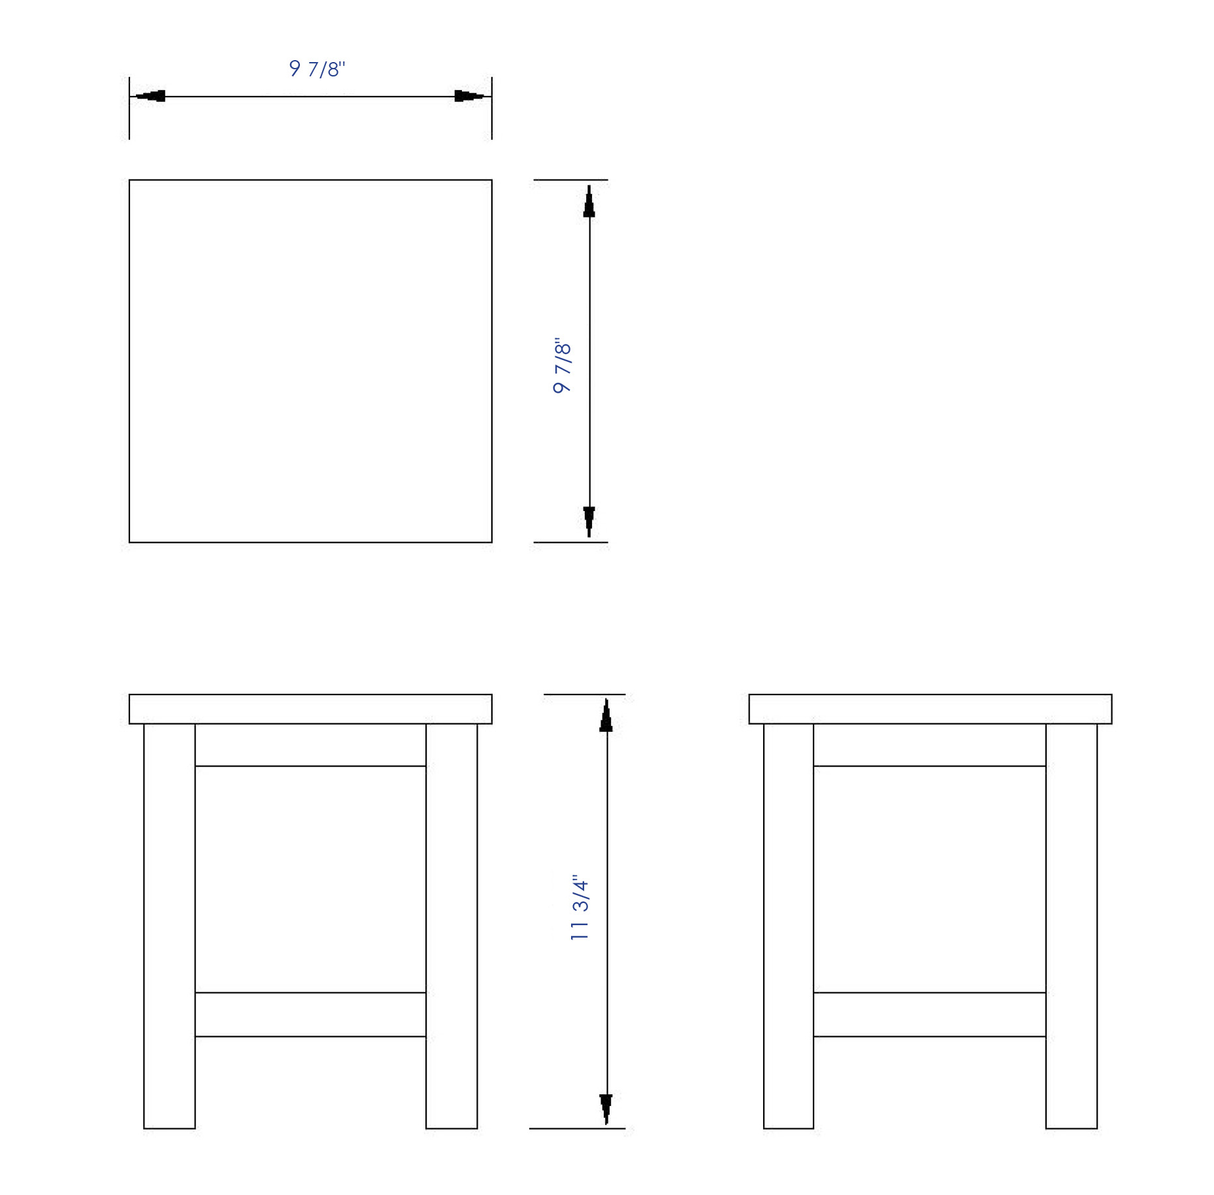 ALFI brand AB4407 10"x10" Square Wooden Bench/Stool Multi-Purpose Accessory